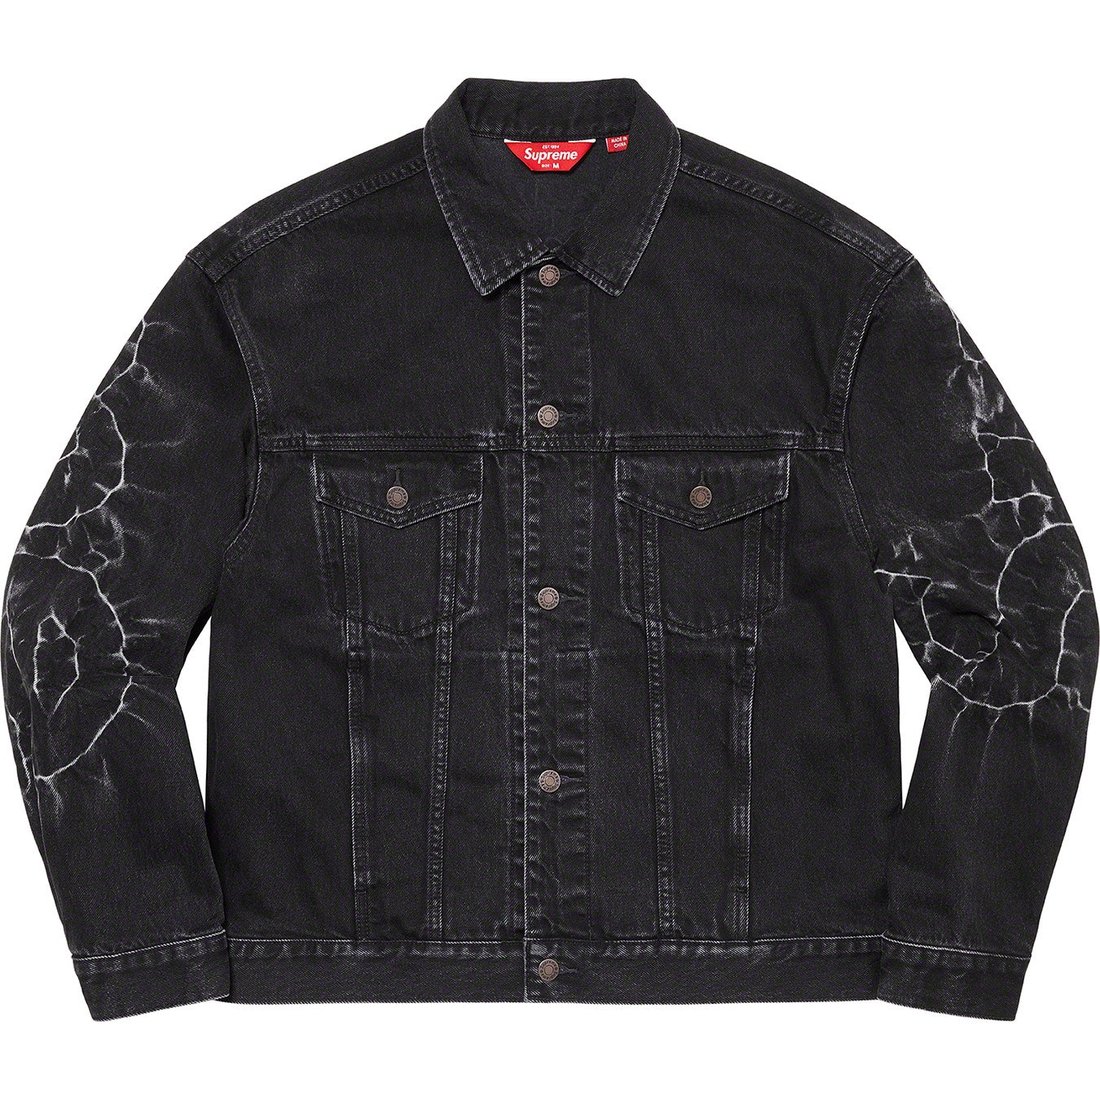 Details on Shibori Denim Trucker Jacket Black from spring summer 2023 (Price is $298)